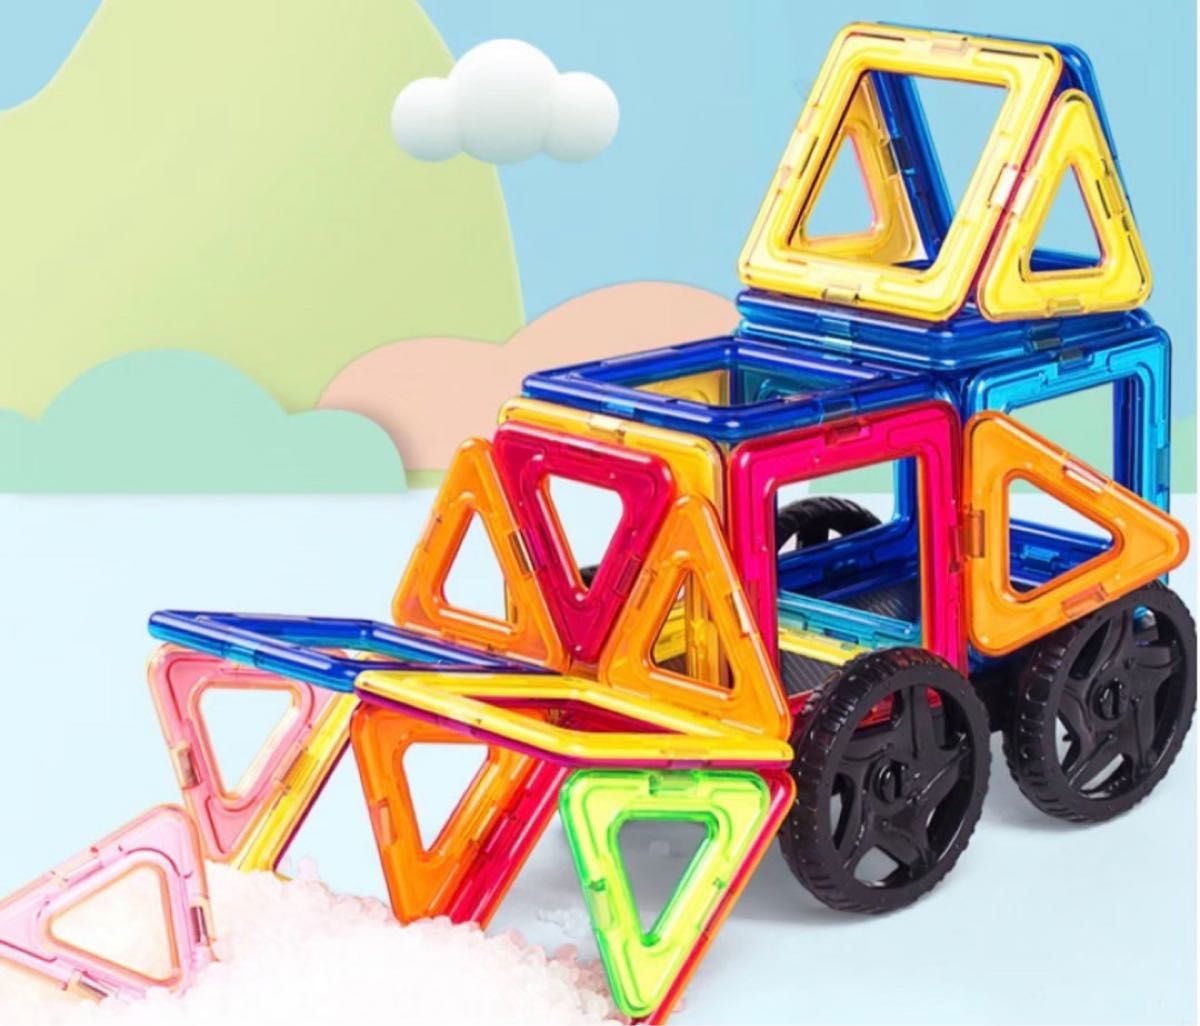 マグネットブロック 知育玩具 磁石ブロック 立体パズル 想像力 発達 指先 子供の想像力 思考力を高める知育玩具